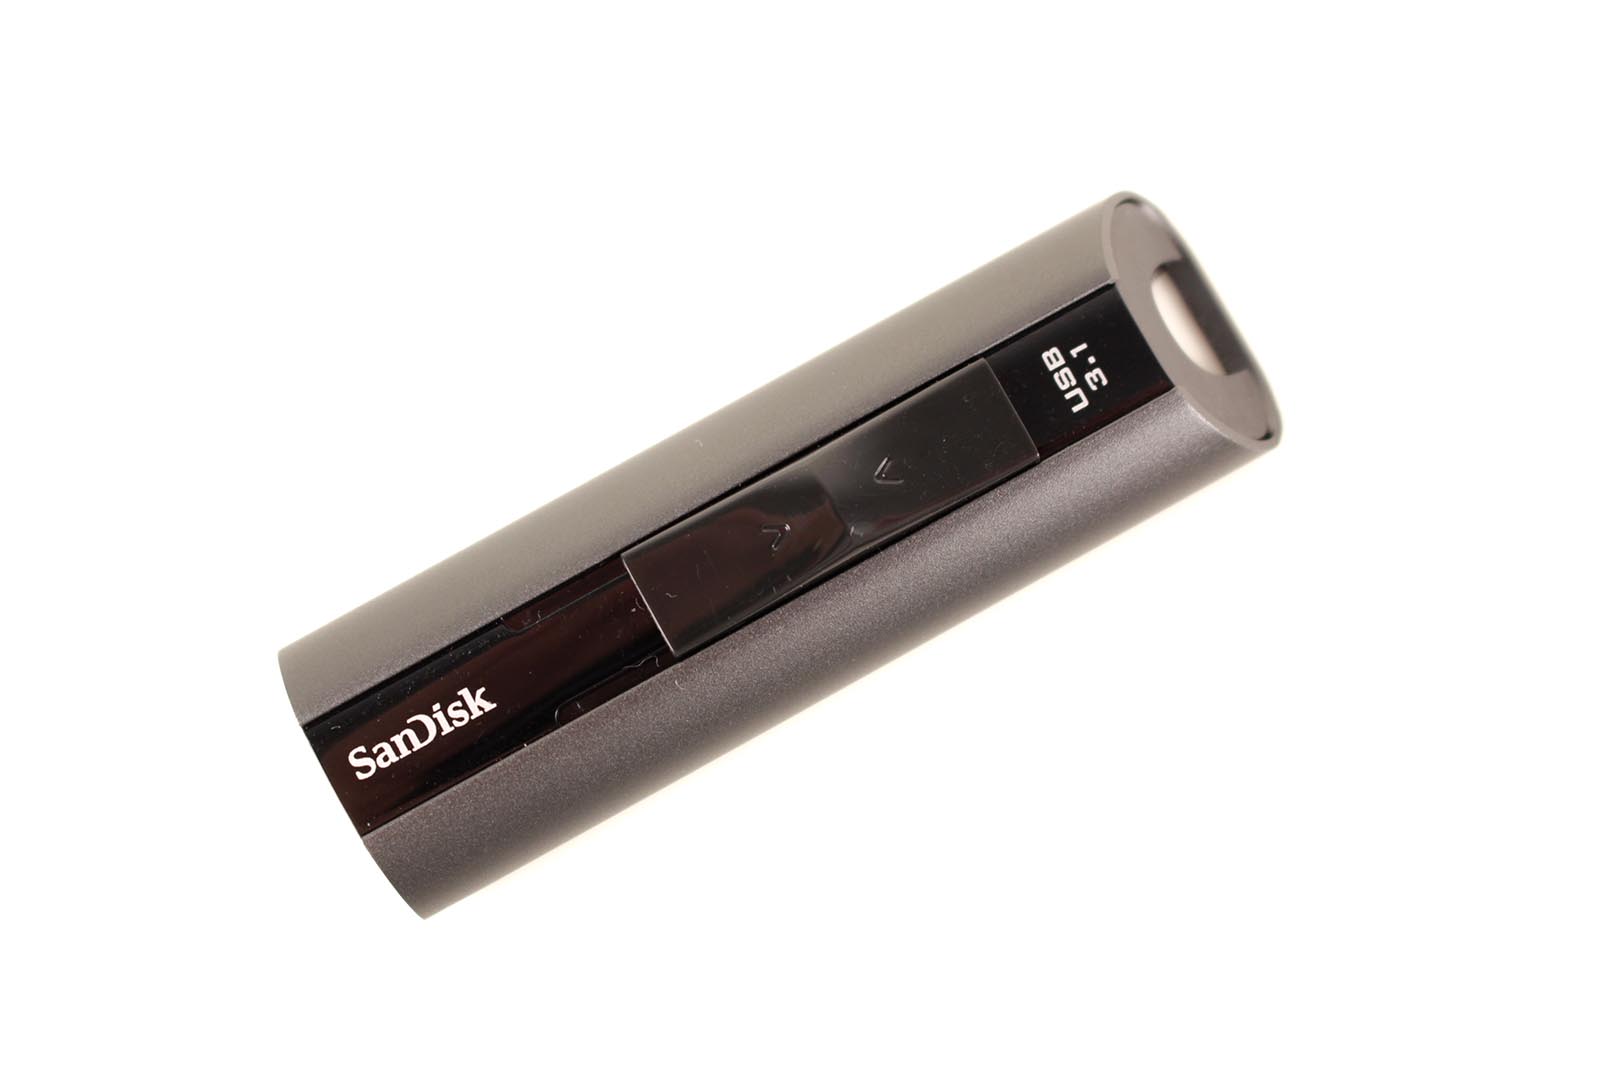 SanDisk Extreme Pro USB 3.1 - Draufsicht